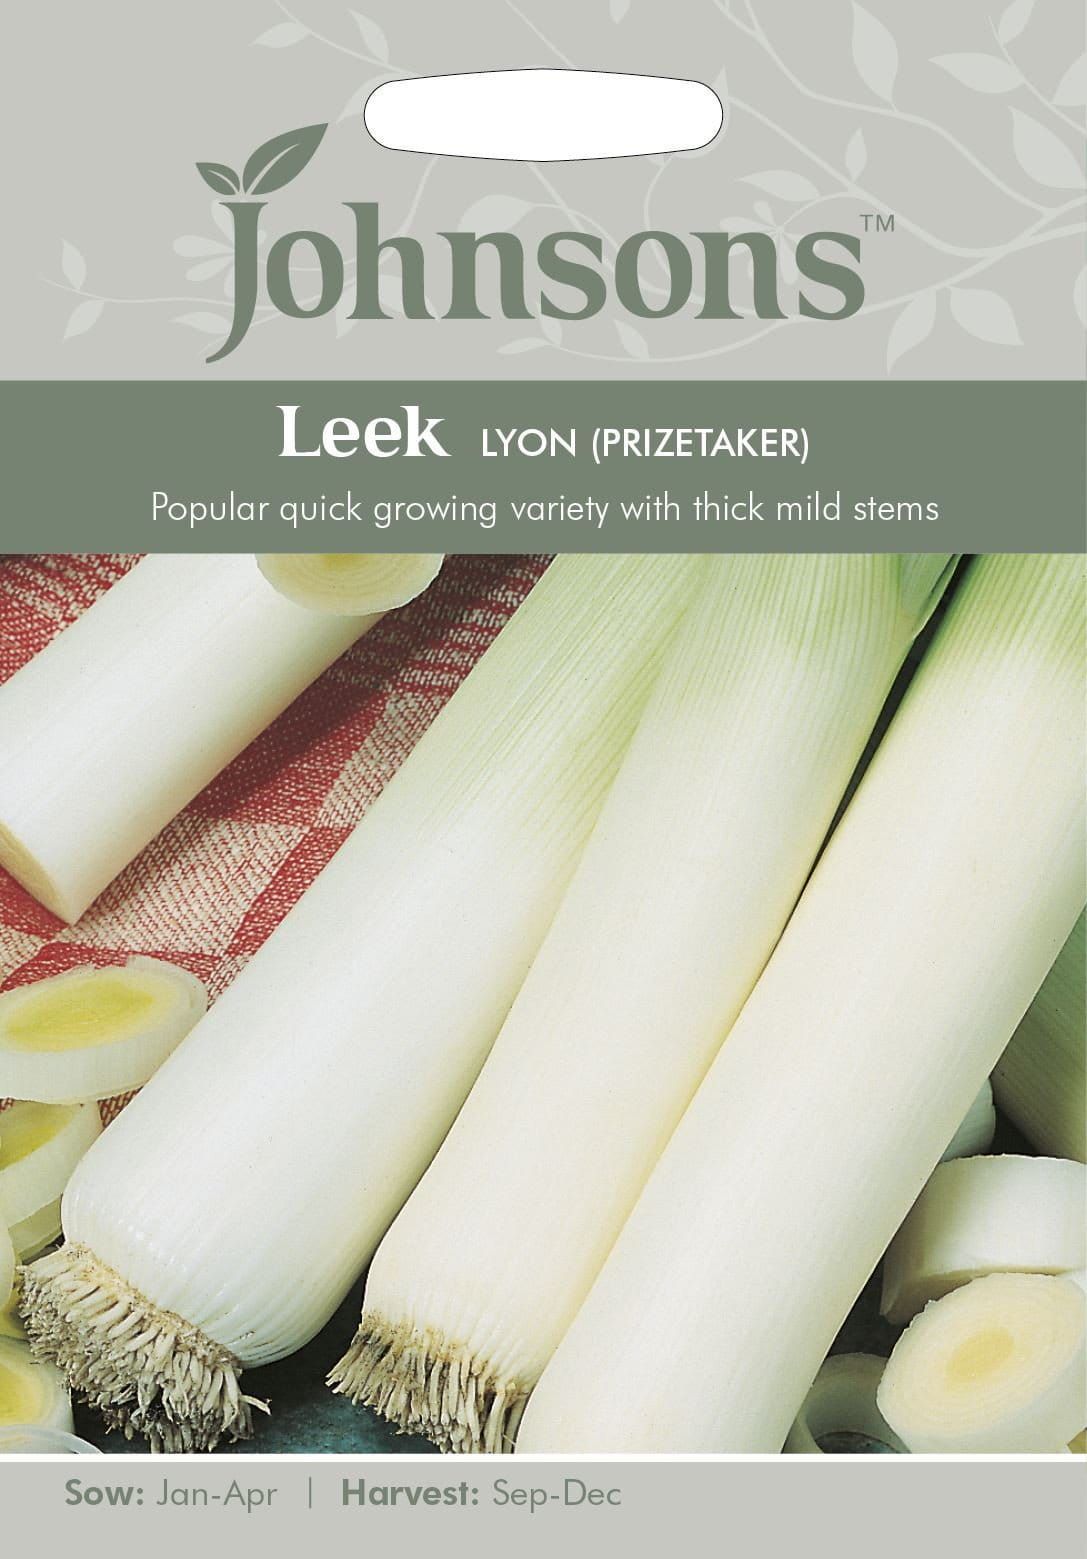 Johnsons Leek Lyon 2 Prizetaker 500 Seeds